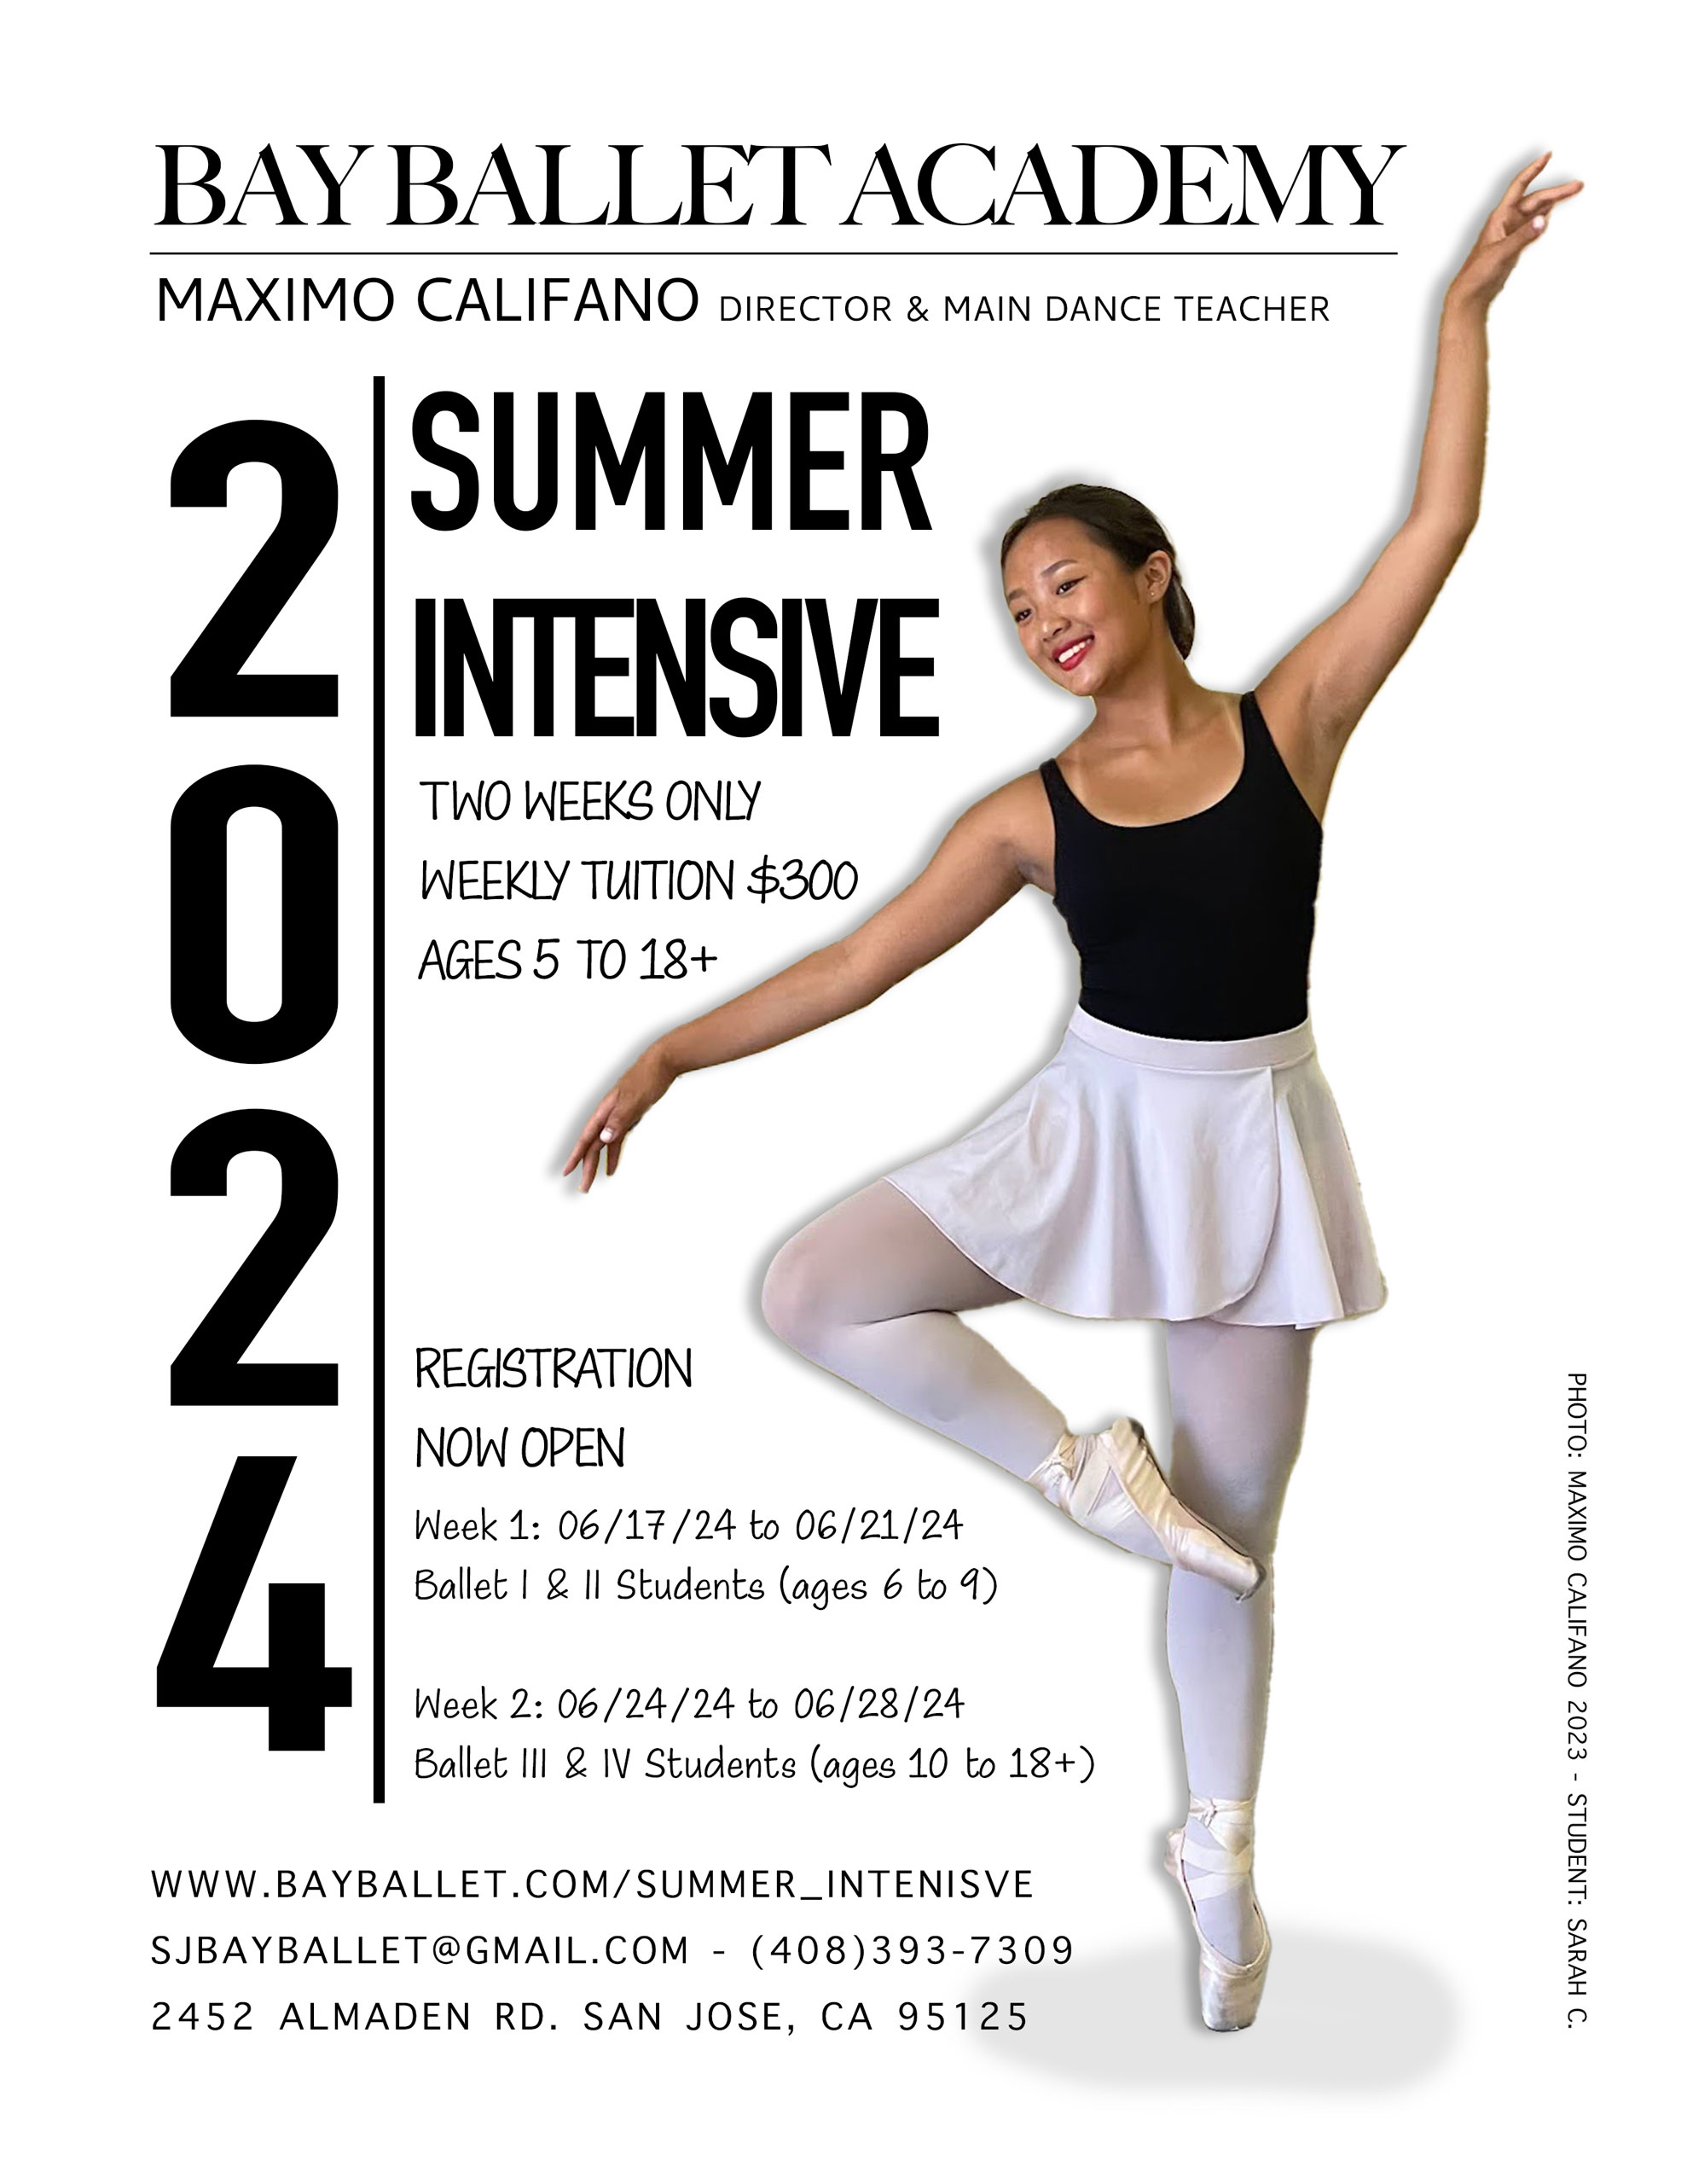 Ballet Summer Intensive Bay Ballet Academy